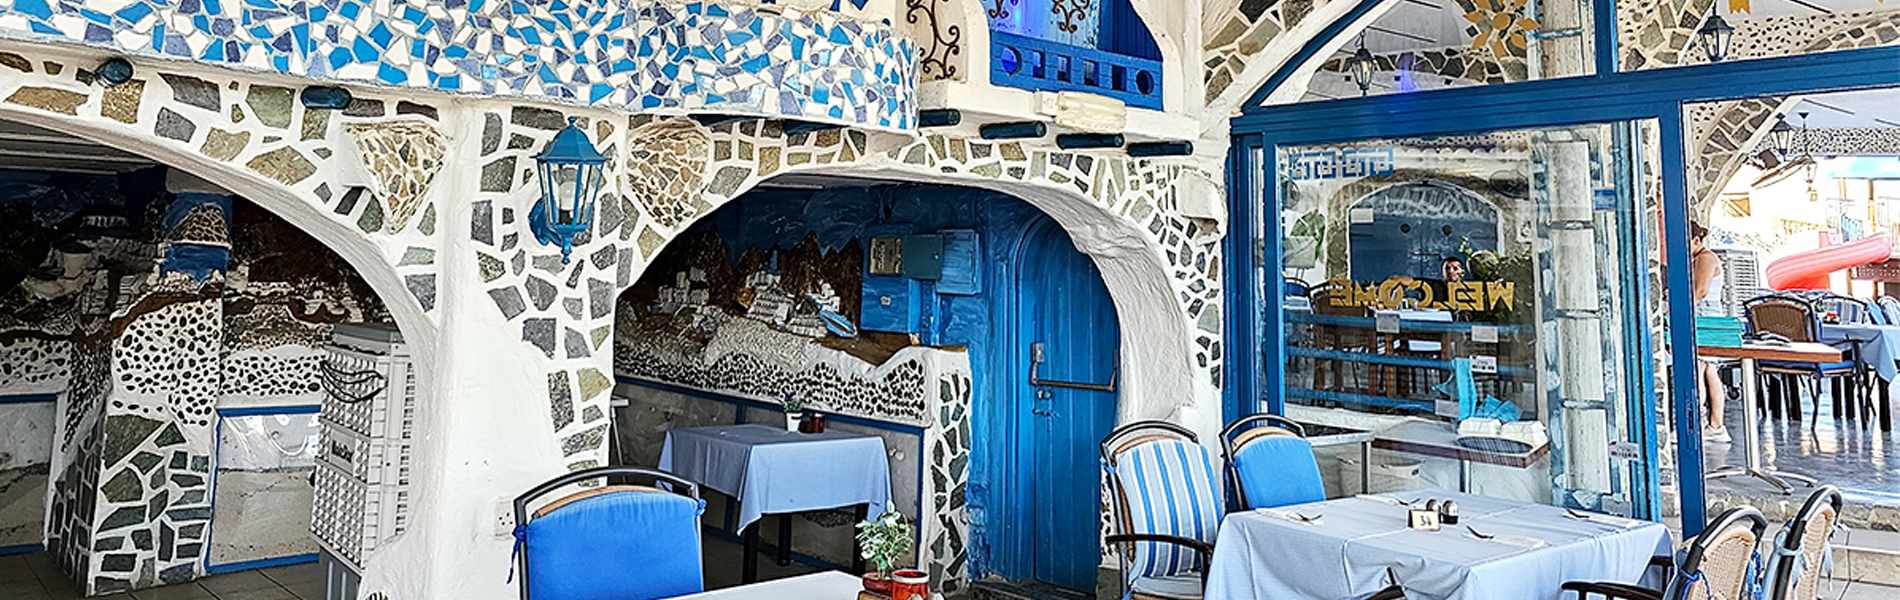 Απολαύσαμε υπέροχο φαγητό σε ένα χώρο που θυμίζει ελληνικό νησί